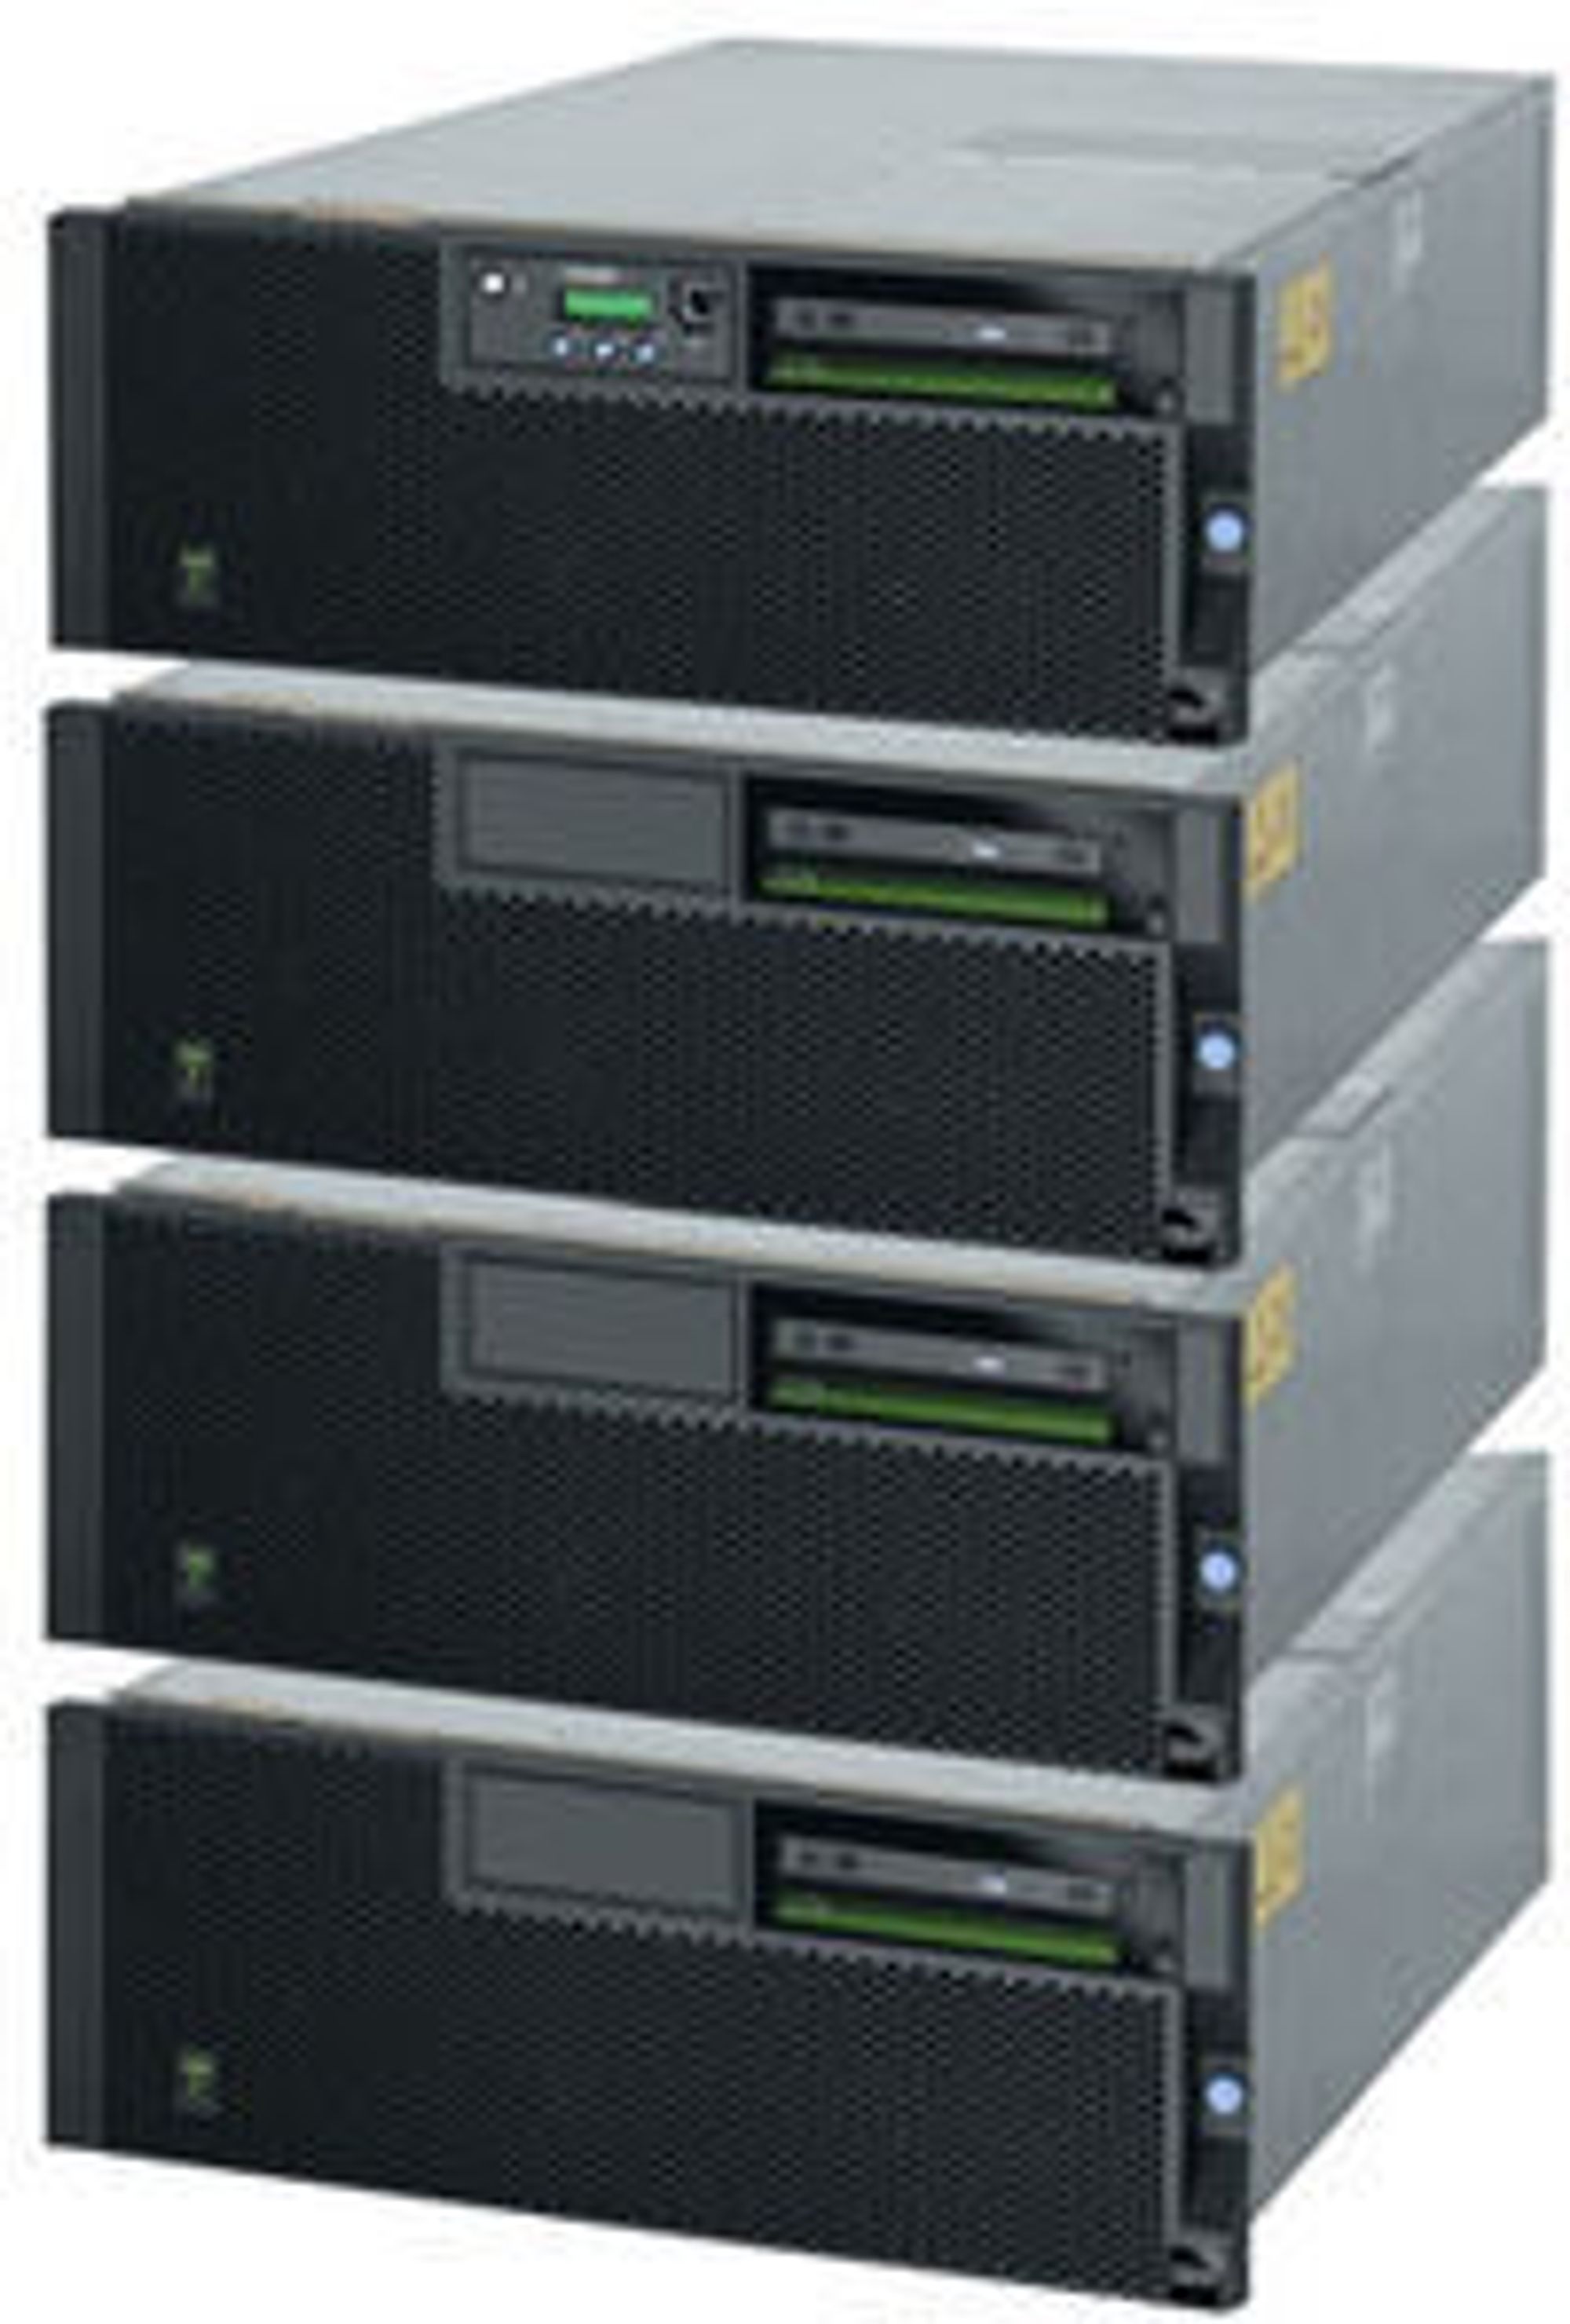 IBM Power 570 er blant systemene som kan oppgraderes til Power7-prosessoren.